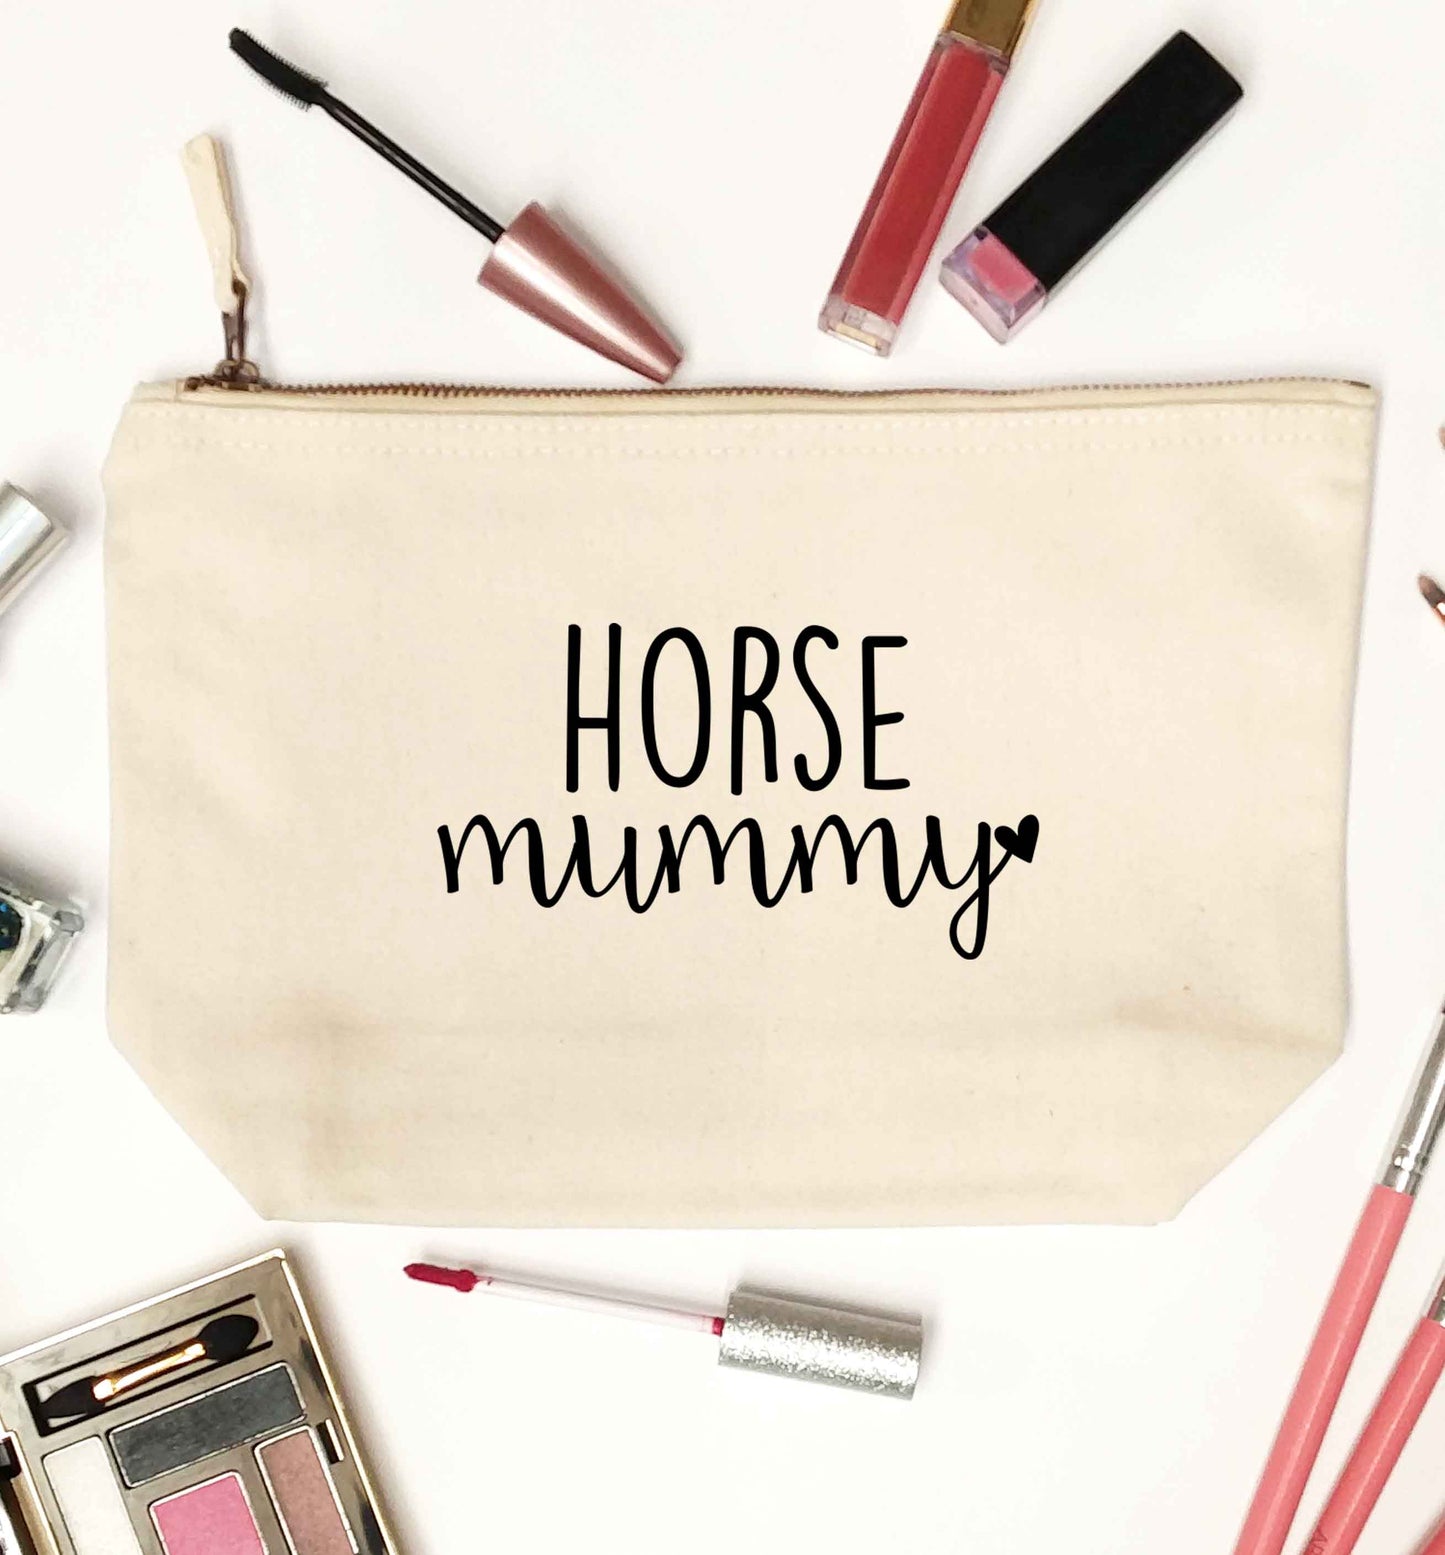 Horse mummy natural makeup bag